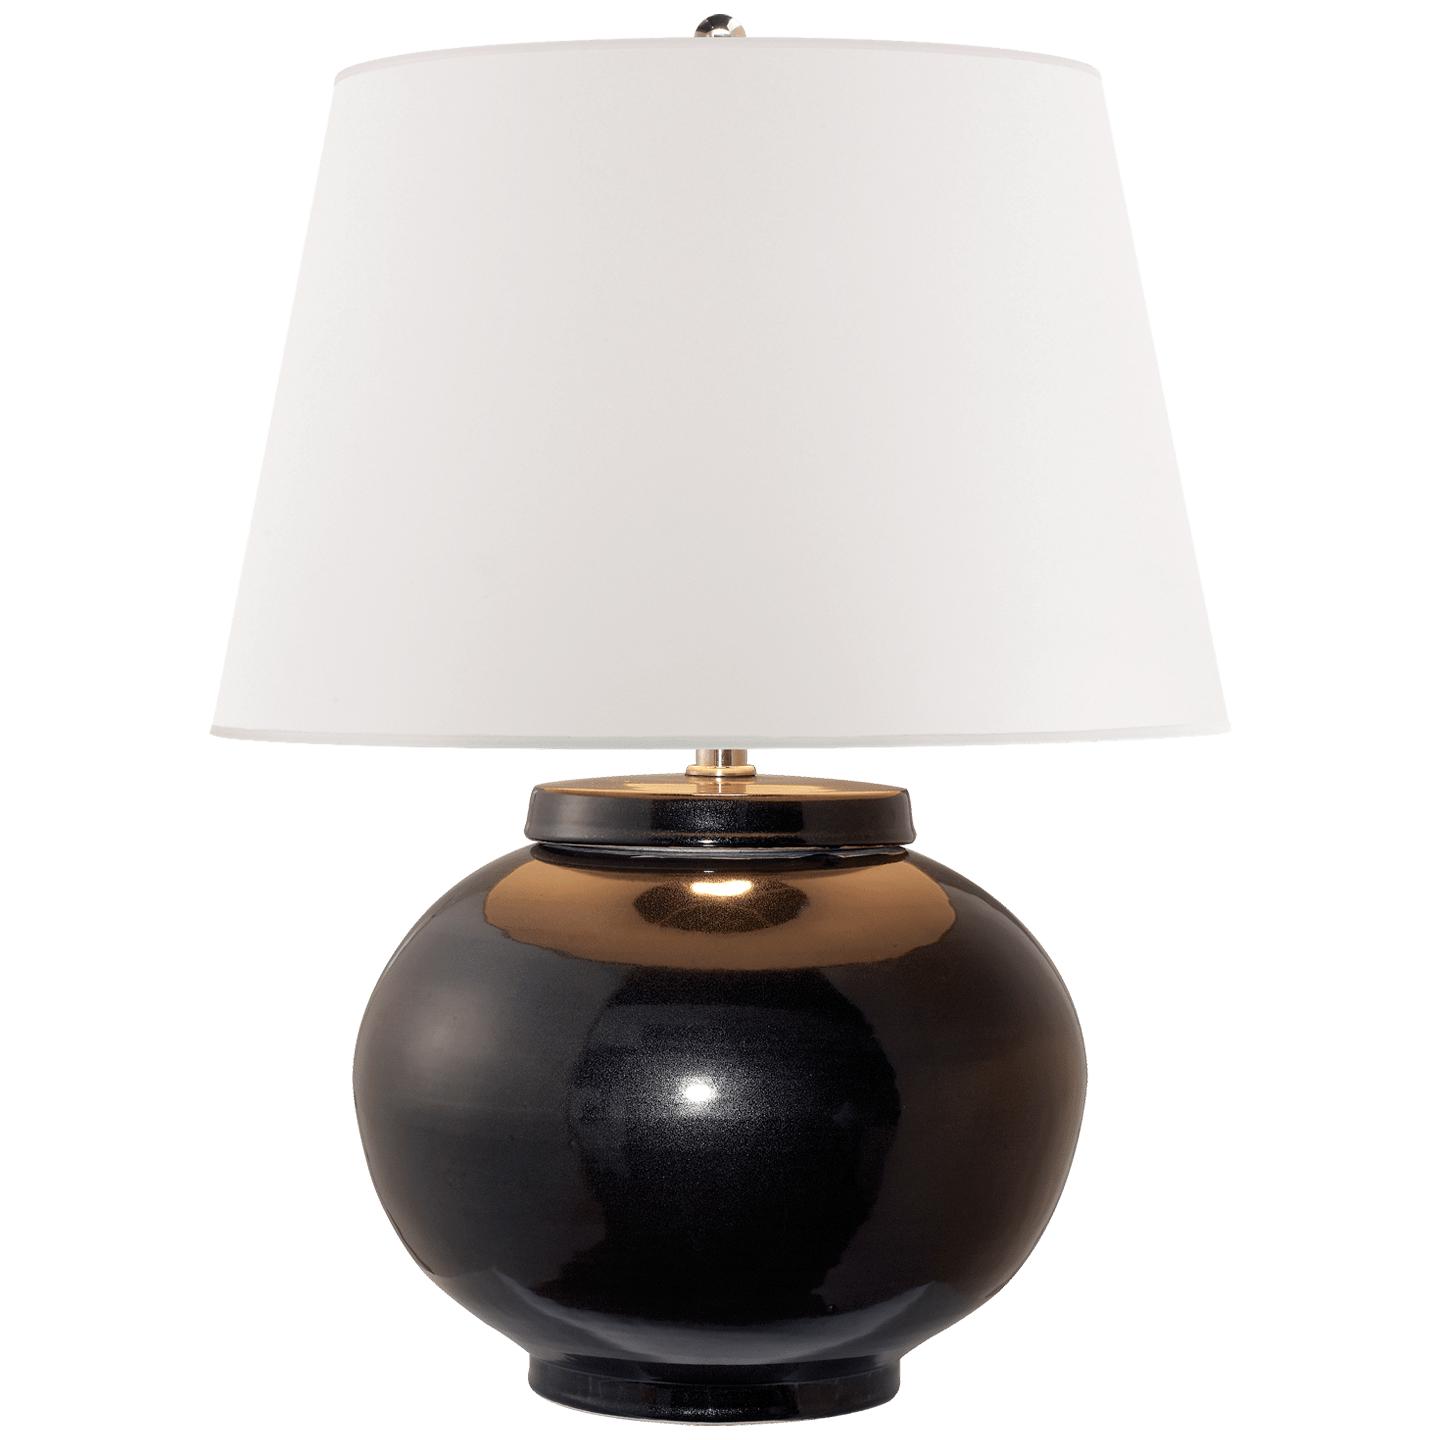 Купить Настольная лампа Carter Small Table Lamp в интернет-магазине roooms.ru